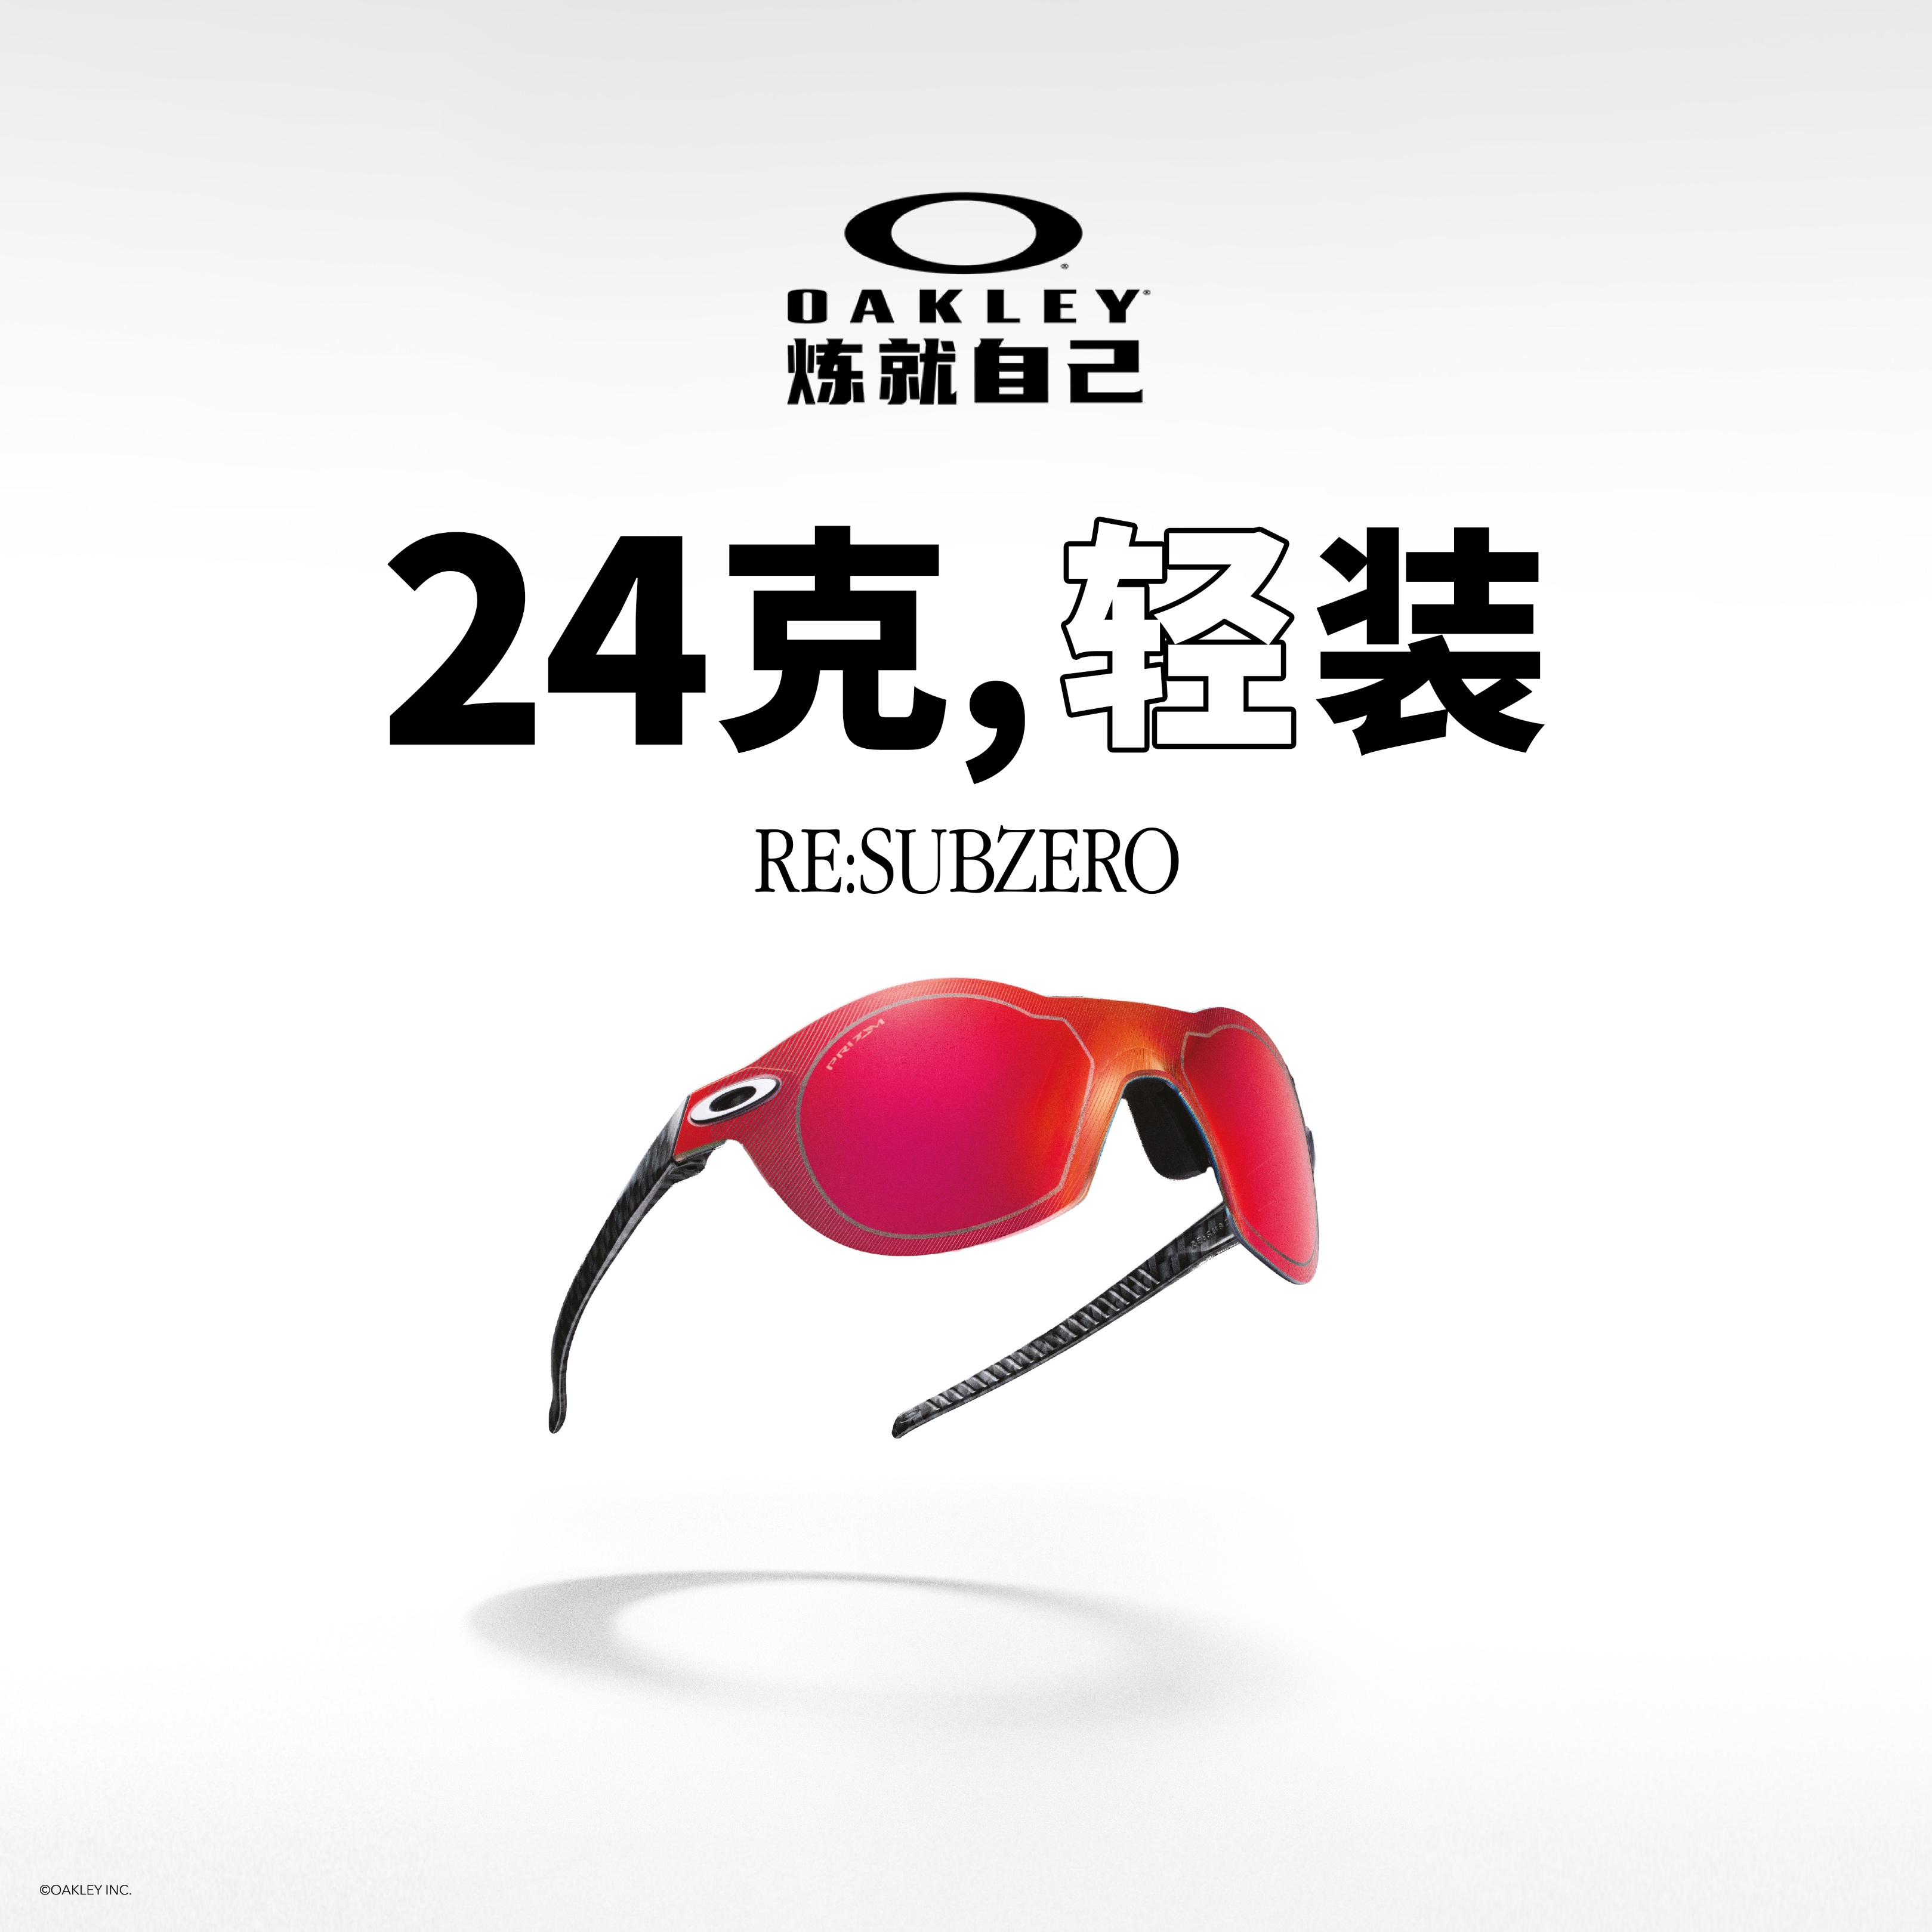 为您量身定制的经典之作：欧克利发布 RE:SUBZERO 眼镜